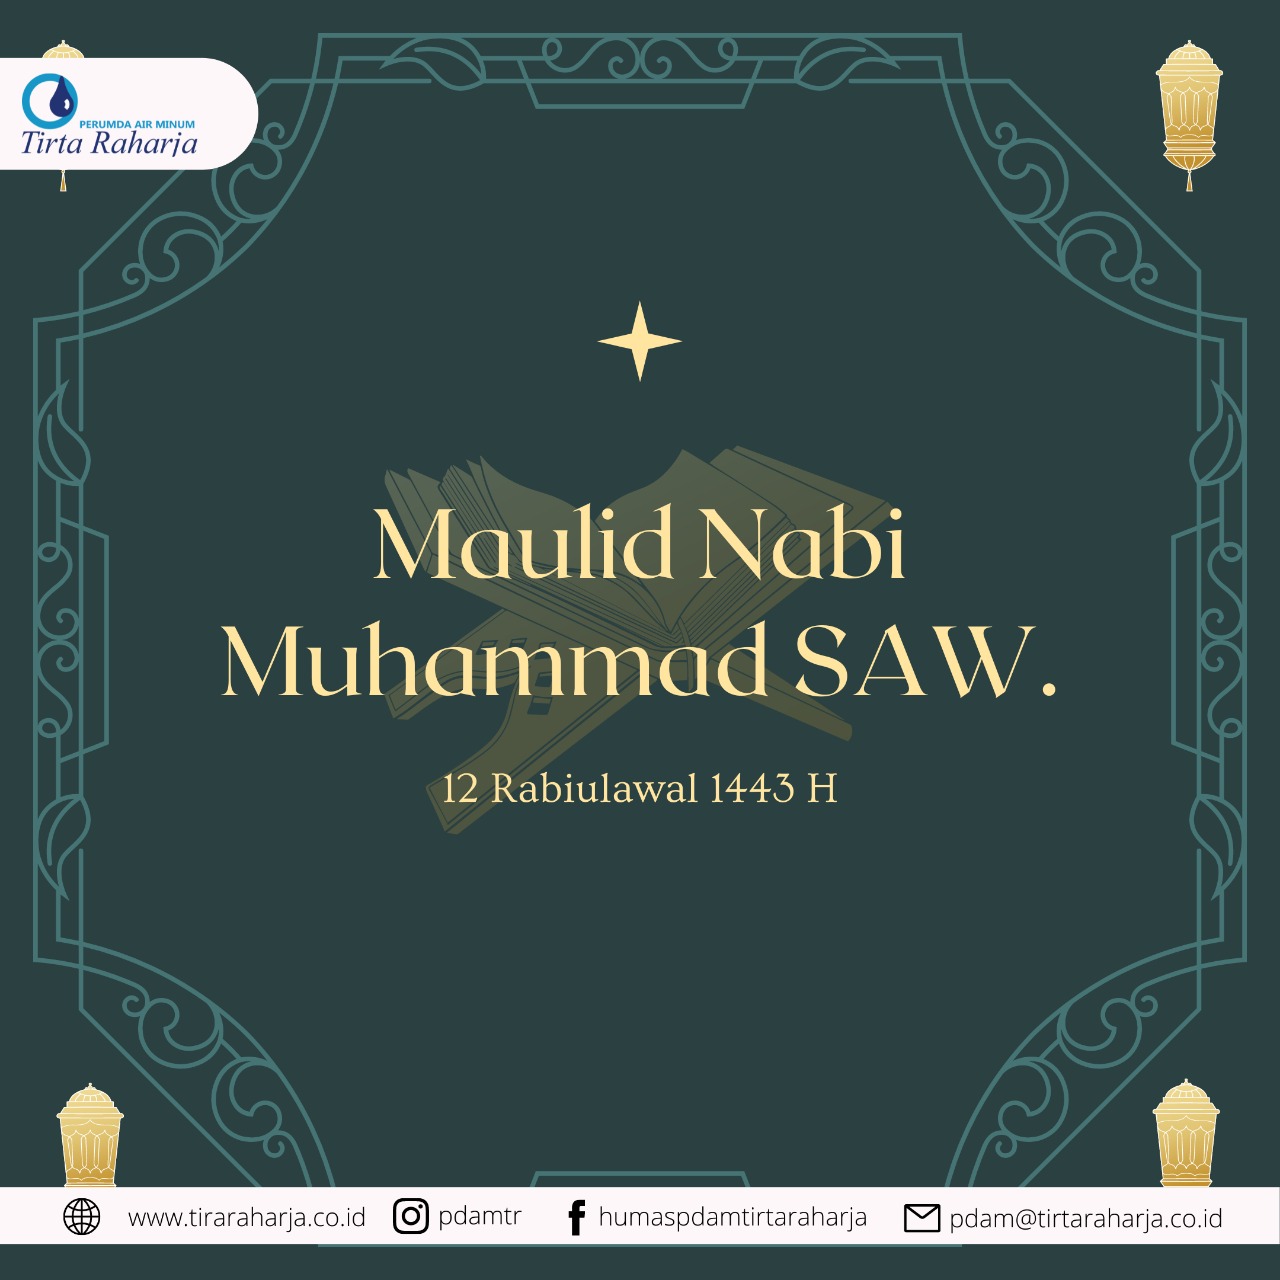 Selamat Memperingati Maulid Nabi Muhammad SAW 12 Rabiulawal 1443 H.